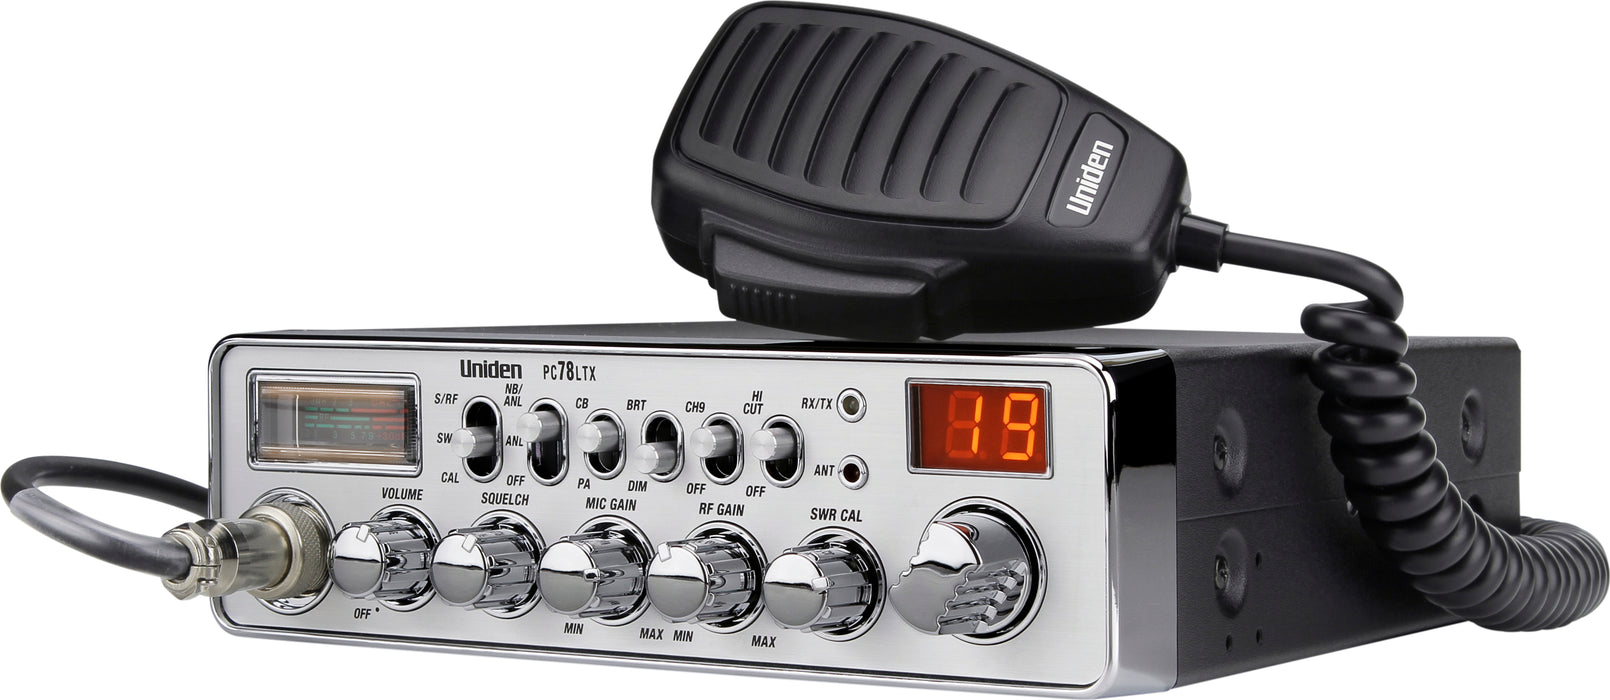 PC78LTX CB Radio with SWR — Uniden America Corporation